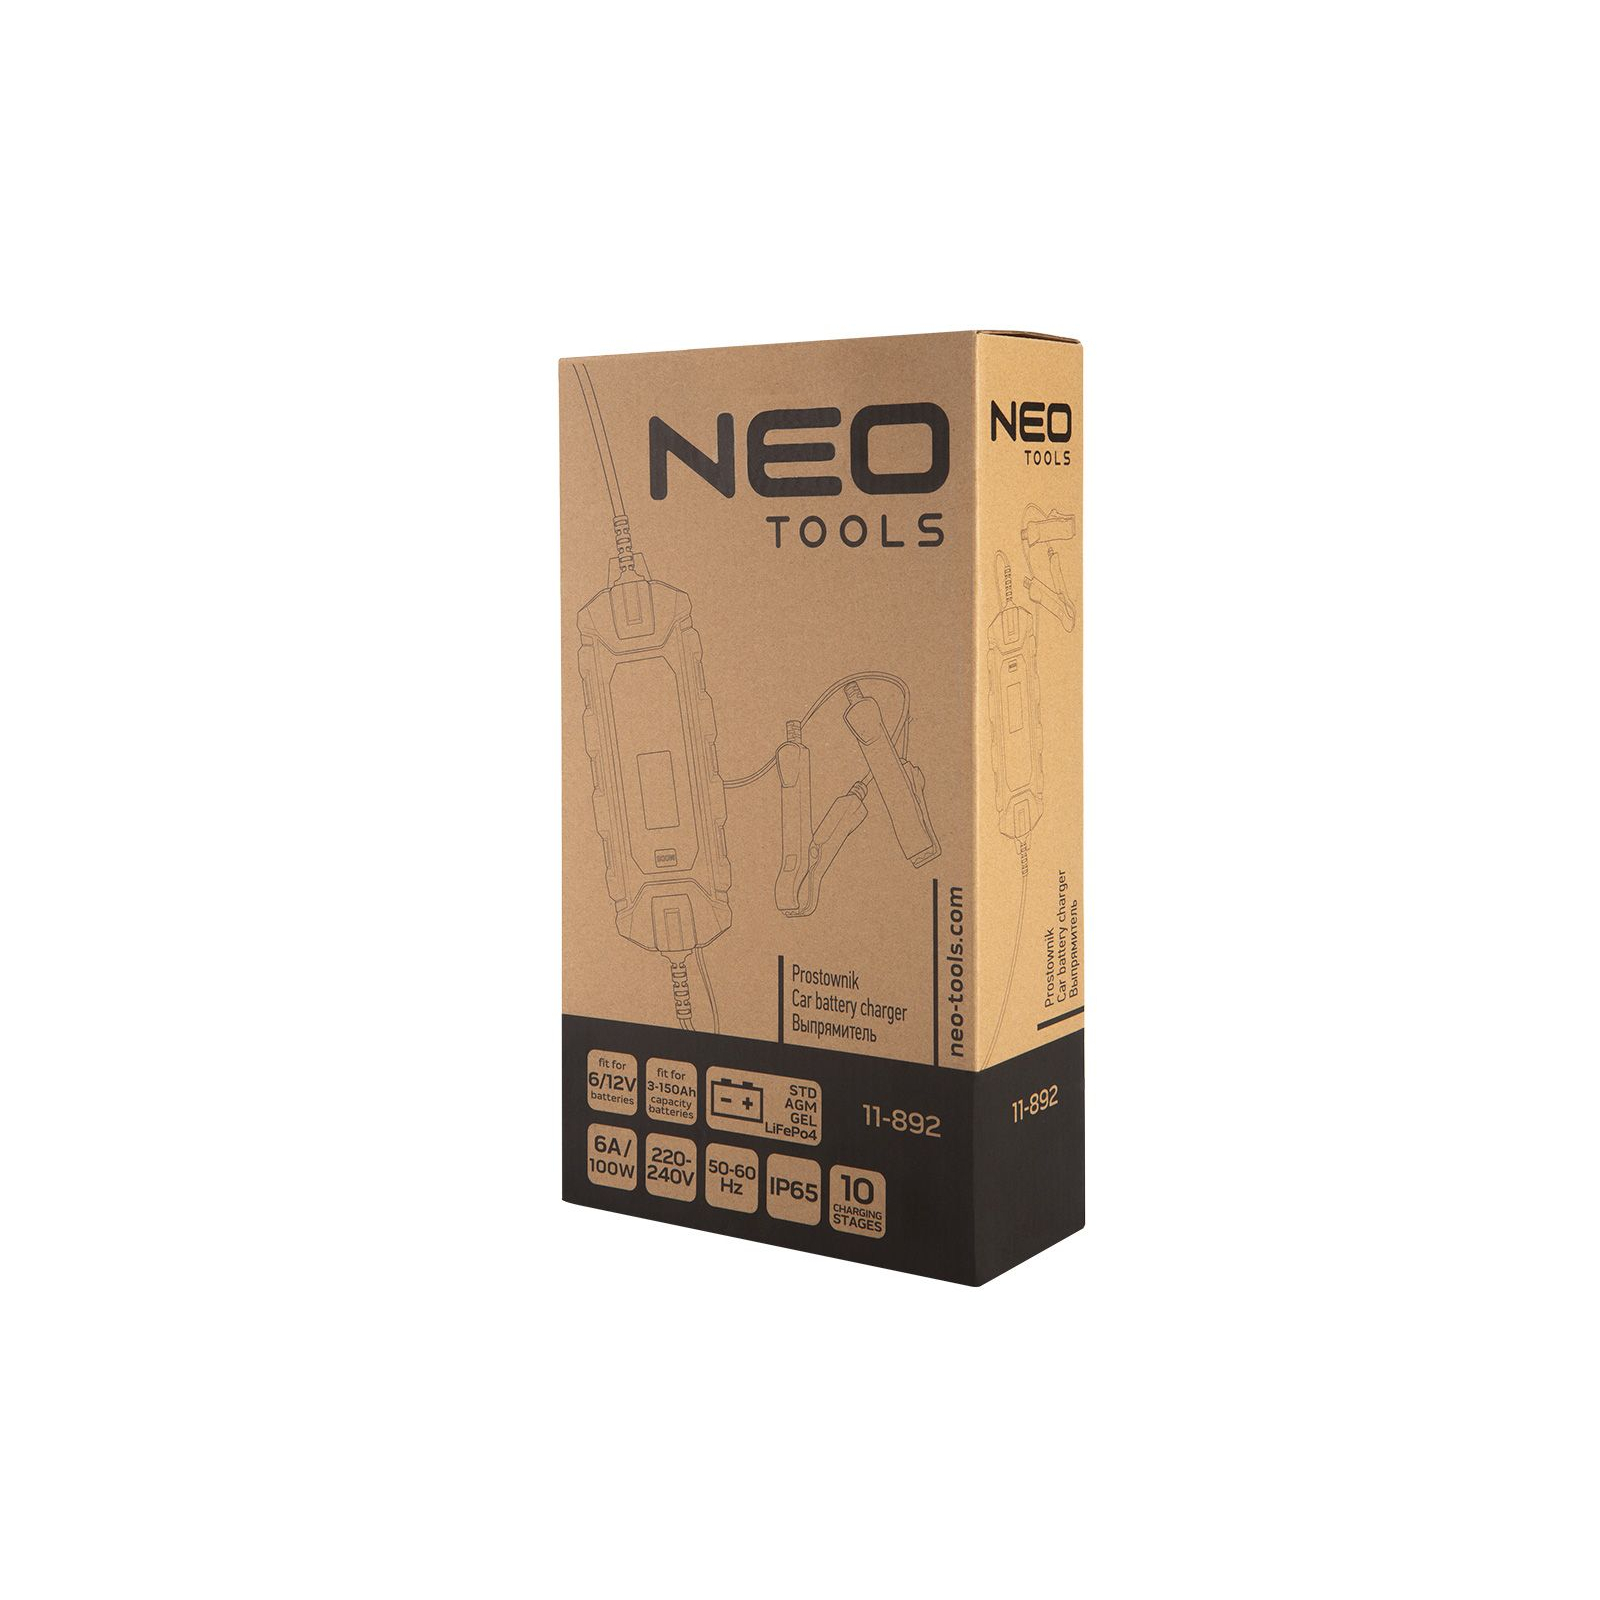 Зарядний пристрій для автомобільного акумулятора Neo Tools 6А/100Вт, 3-150Ач, для кислотних/AGM/GEL (11-892) зображення 7